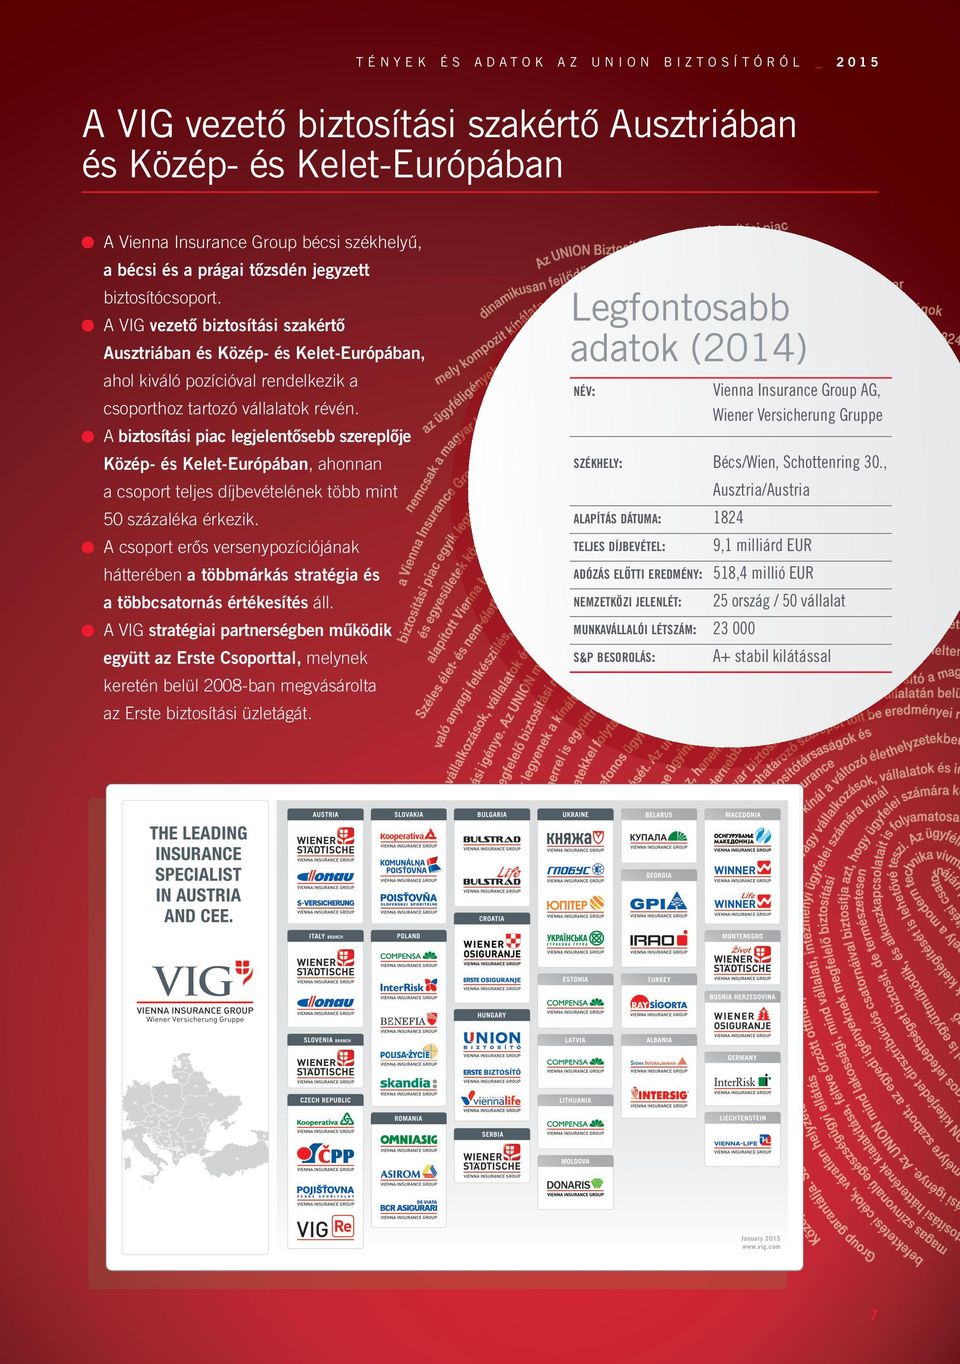 A VIG vezető biztosítási szakértő Ausztriában és Közép- és Kelet-Európában, ahol kiváló pozícióval rendelkezik a Legfontosabb adatok (2014) NÉV: Vienna Insurance Group AG, Wiener Versicherung Gruppe